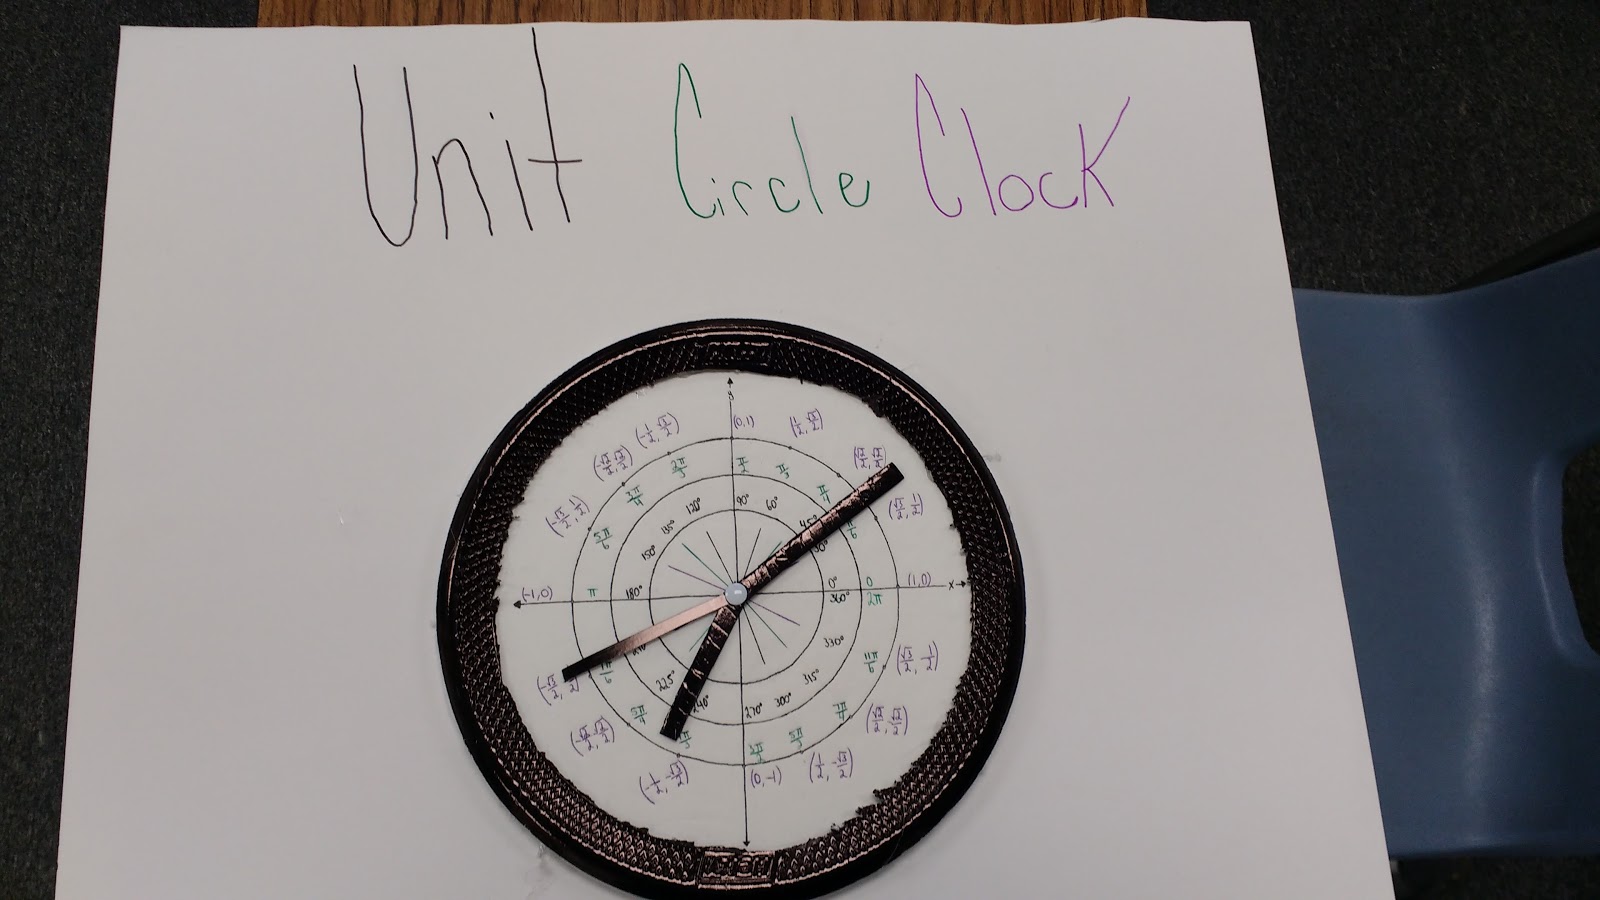 Unit Circle Clock Project